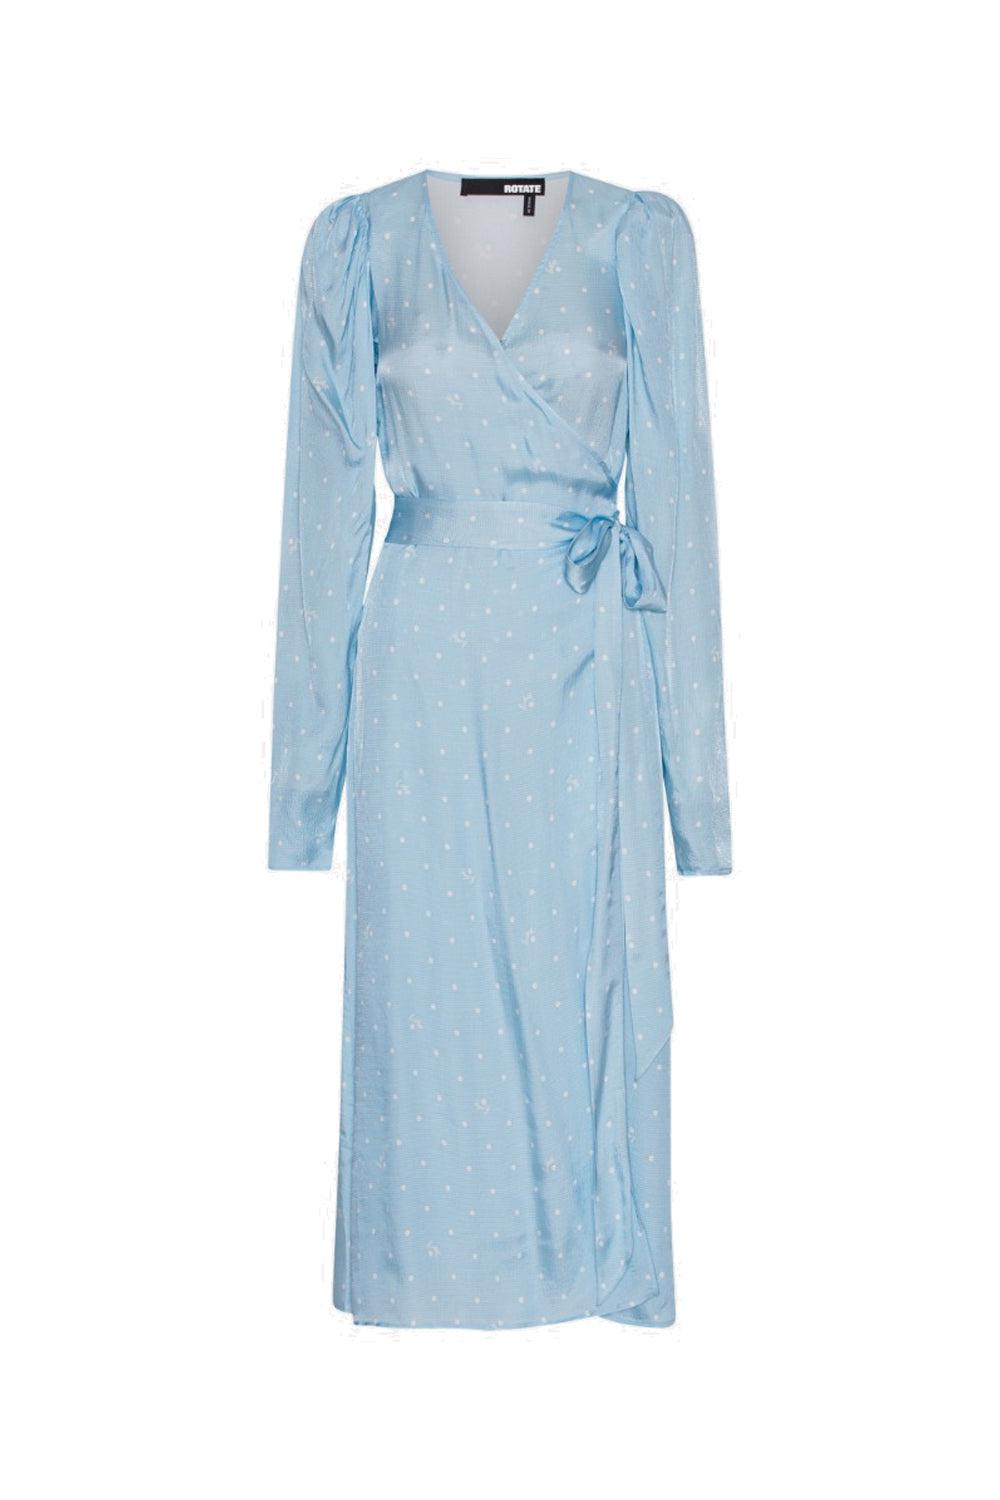 Textured Midi Wrap Dress Polka Dott Cool Blue